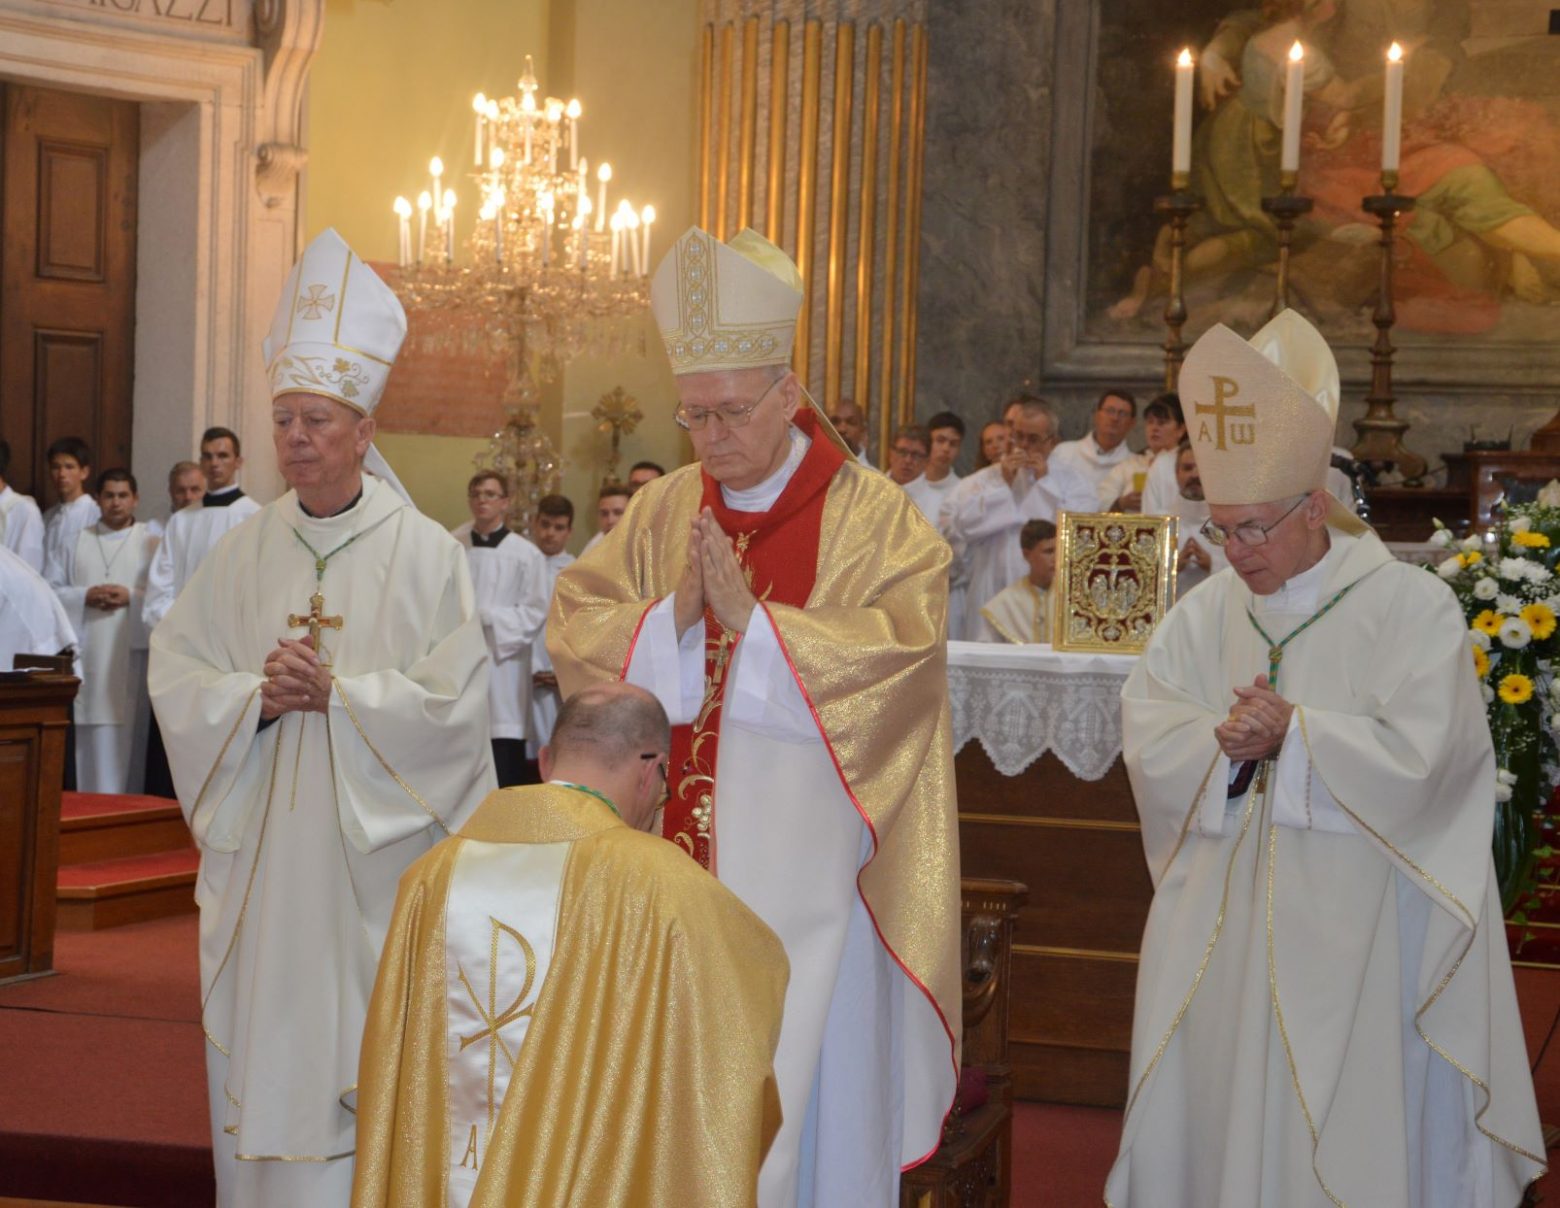 Püspökké szentelték Marton Zsoltot